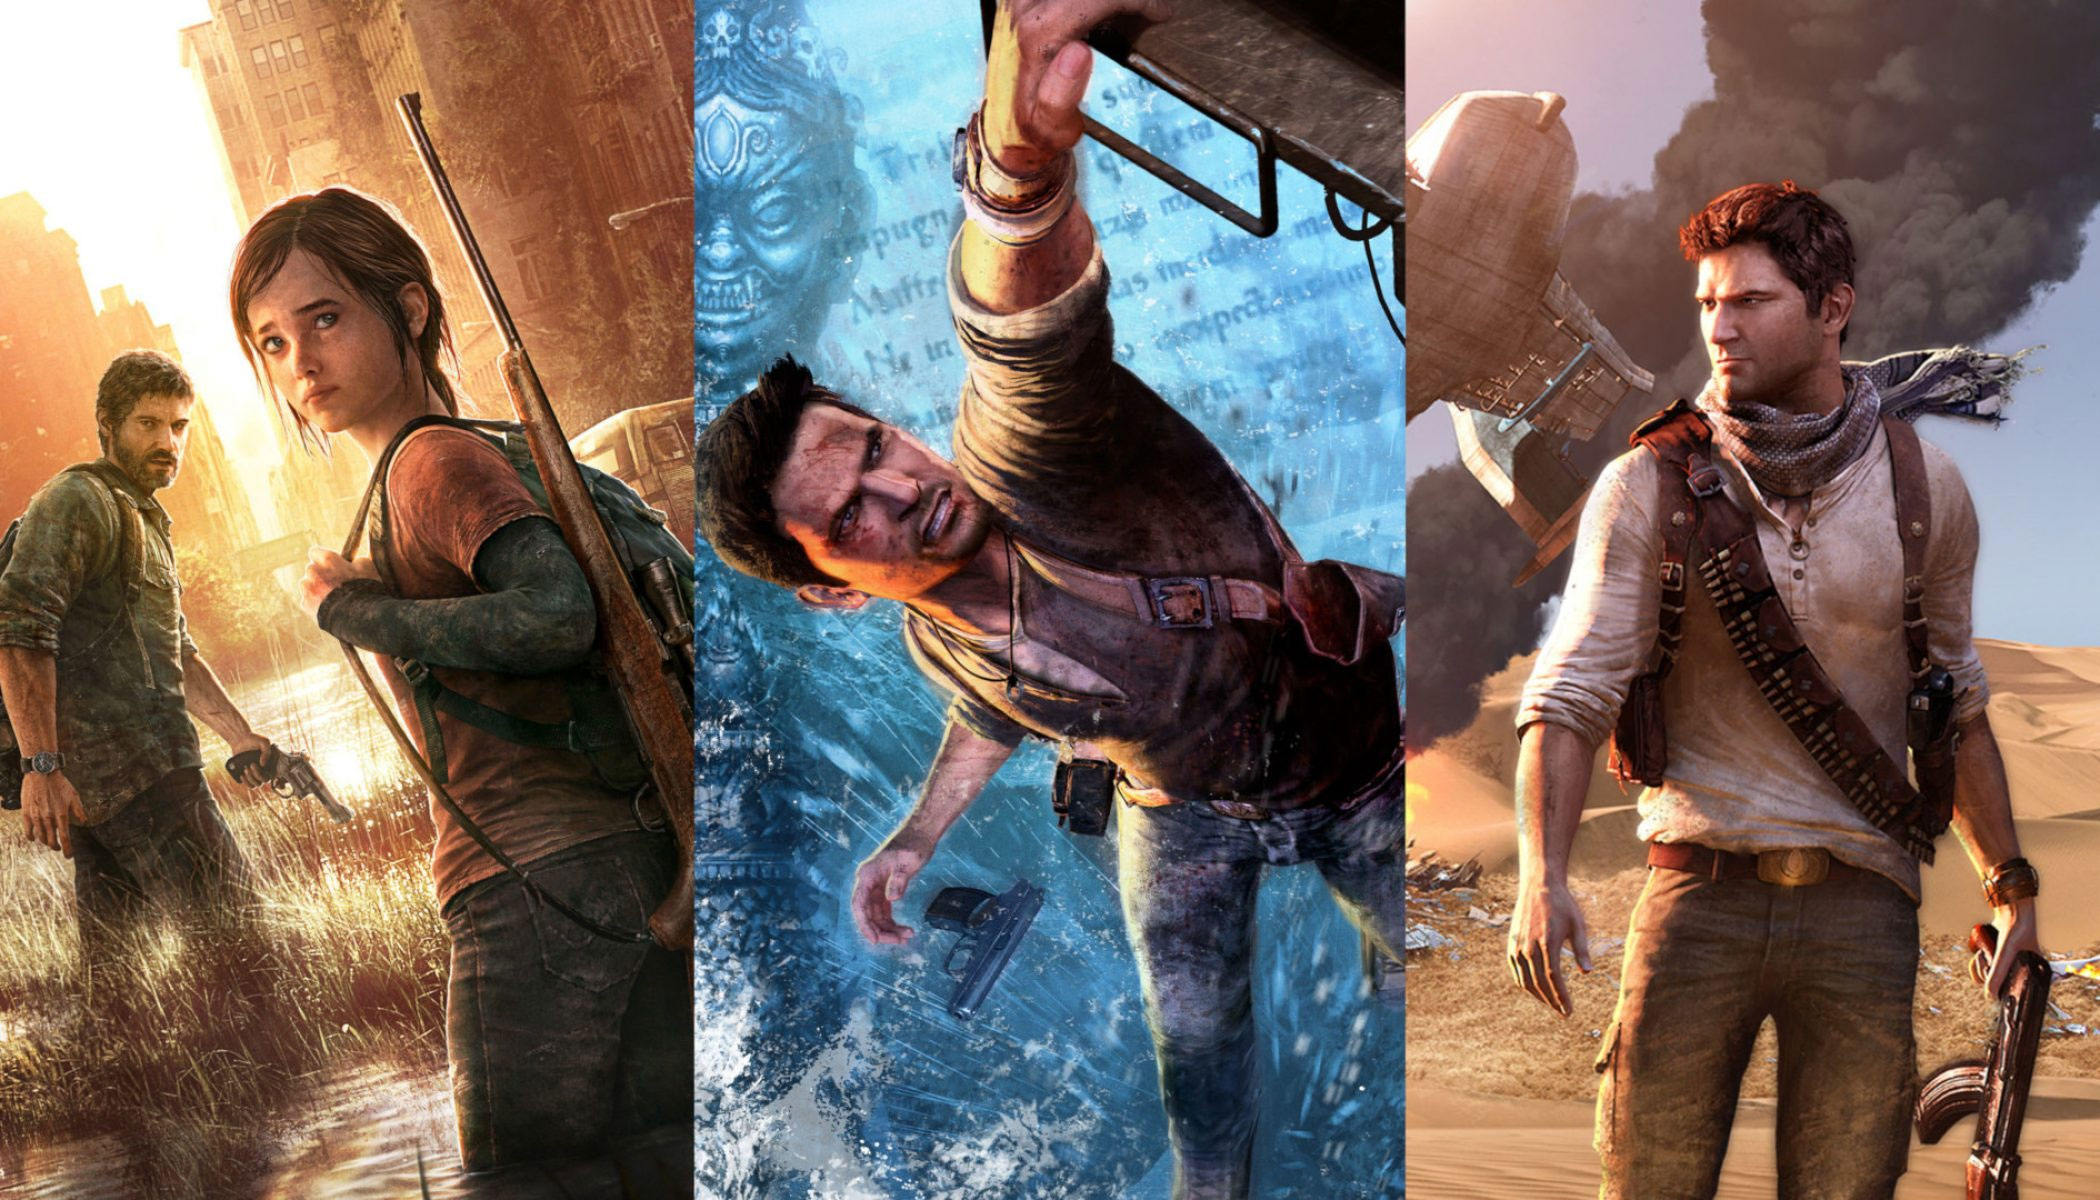 Dodatki za darmo do Uncharted 2, 3 i The Last of Us na PS3. Prezent, by osłodzić przykre wieści